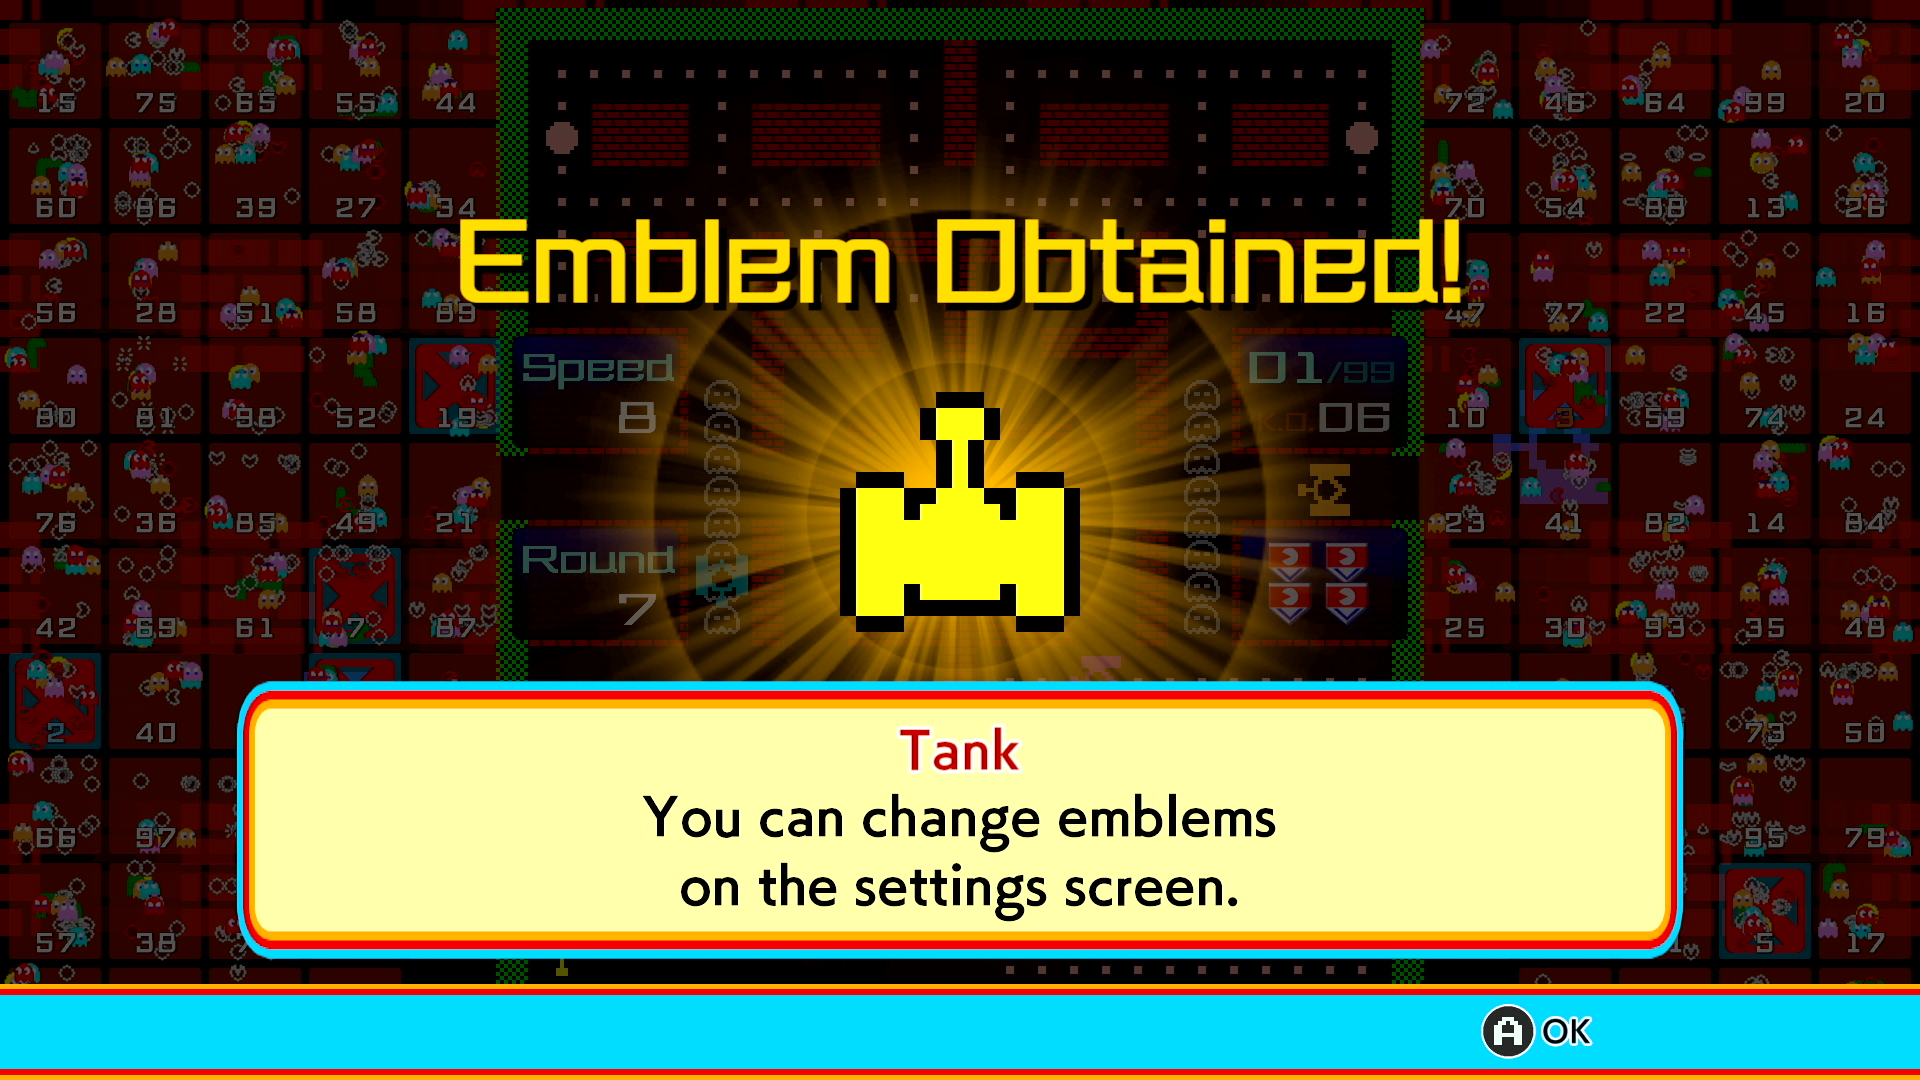 Pac-Man 99 gains free Tank Battalion theme